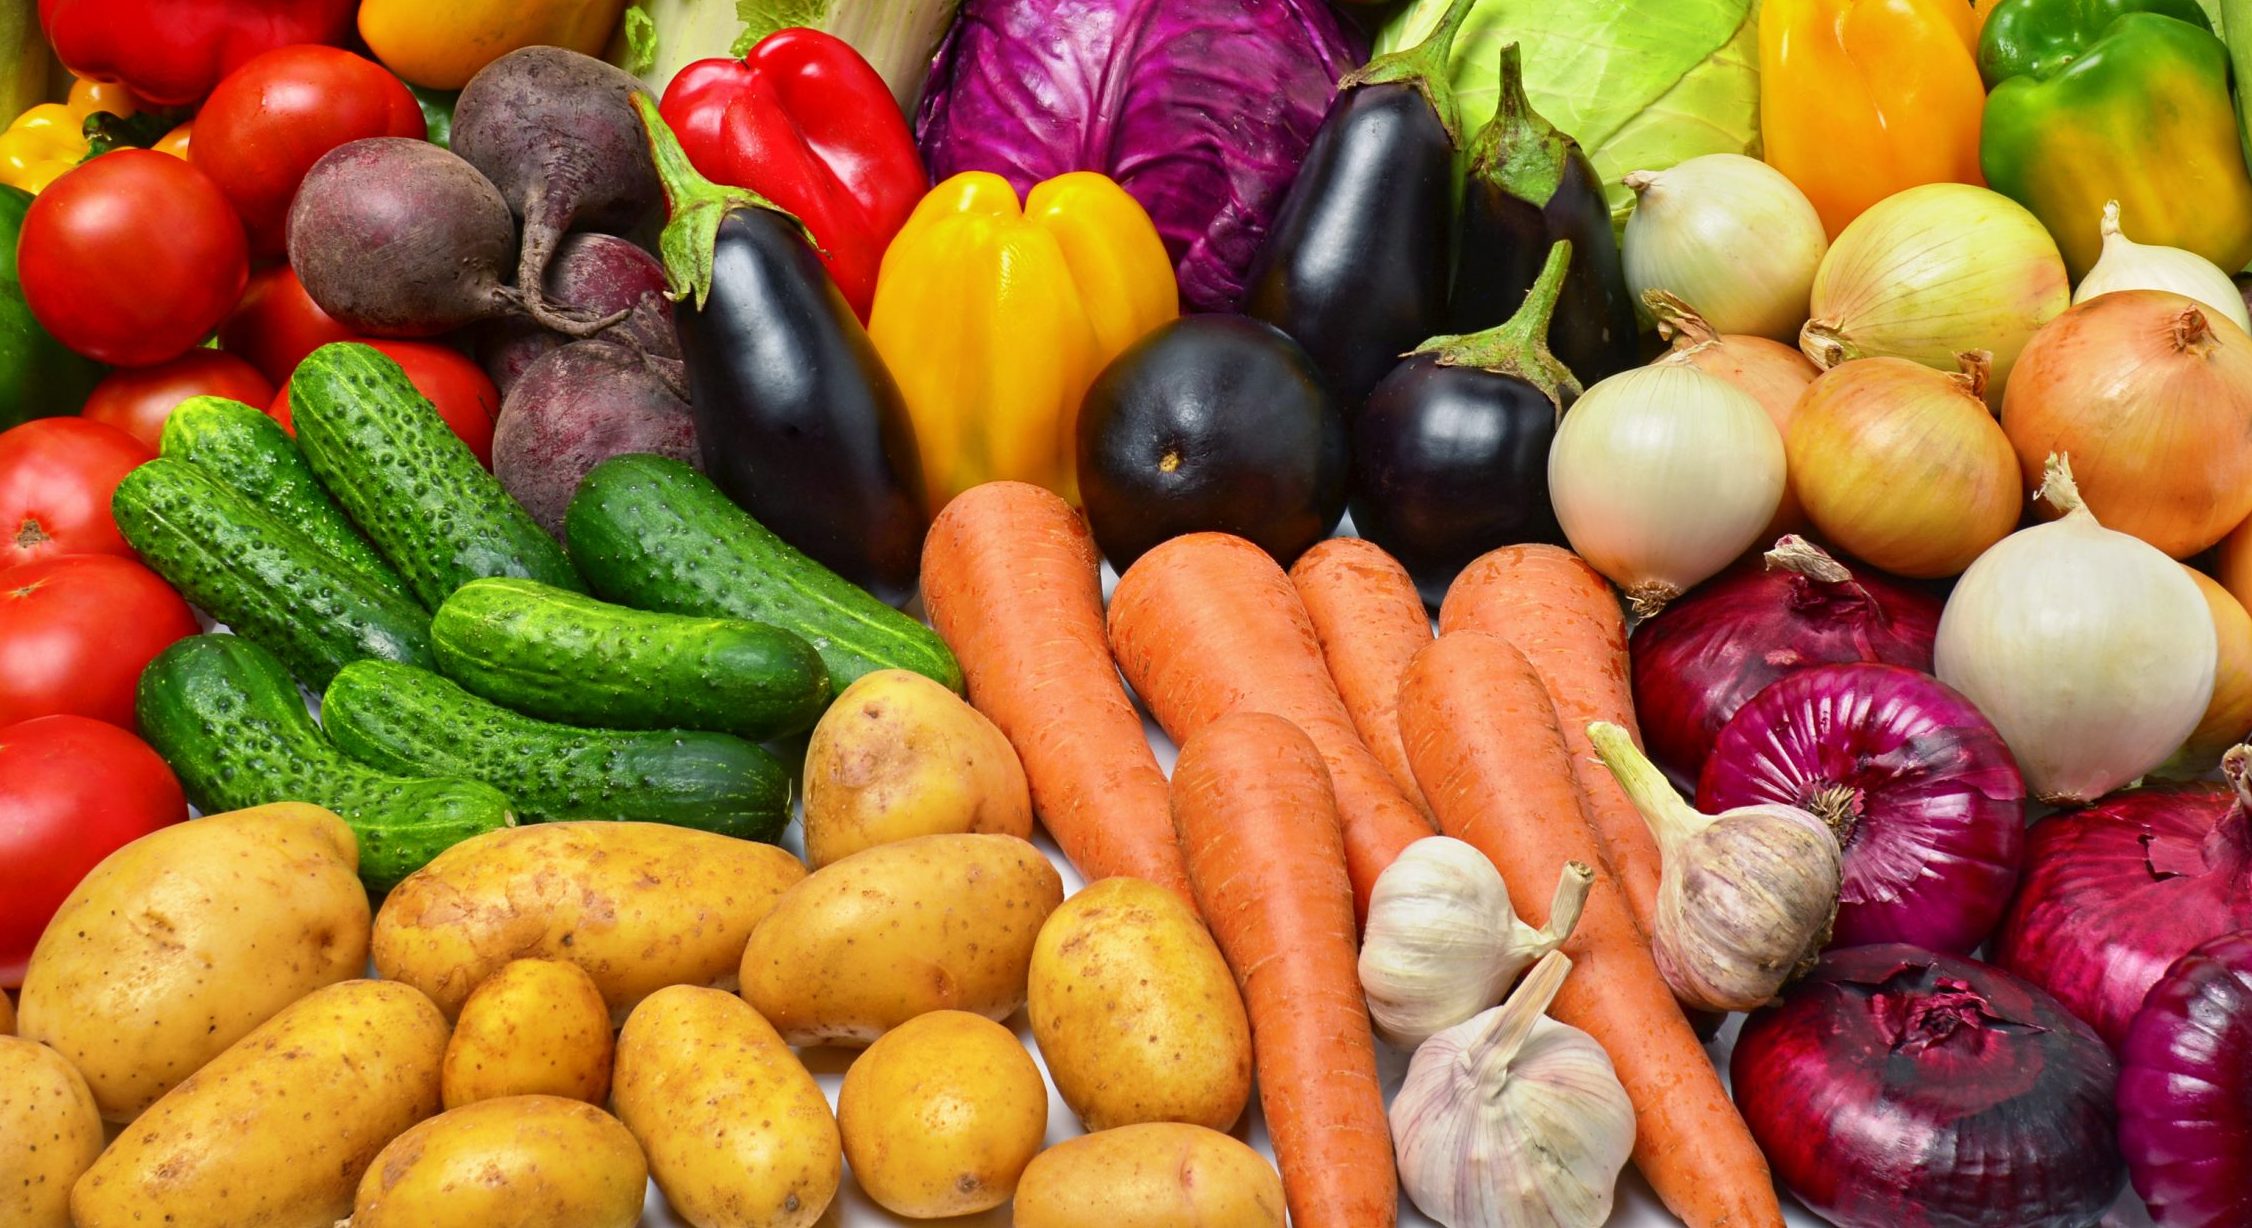 Les exportations de légumes marocains en hausse de 64% en cinq ans